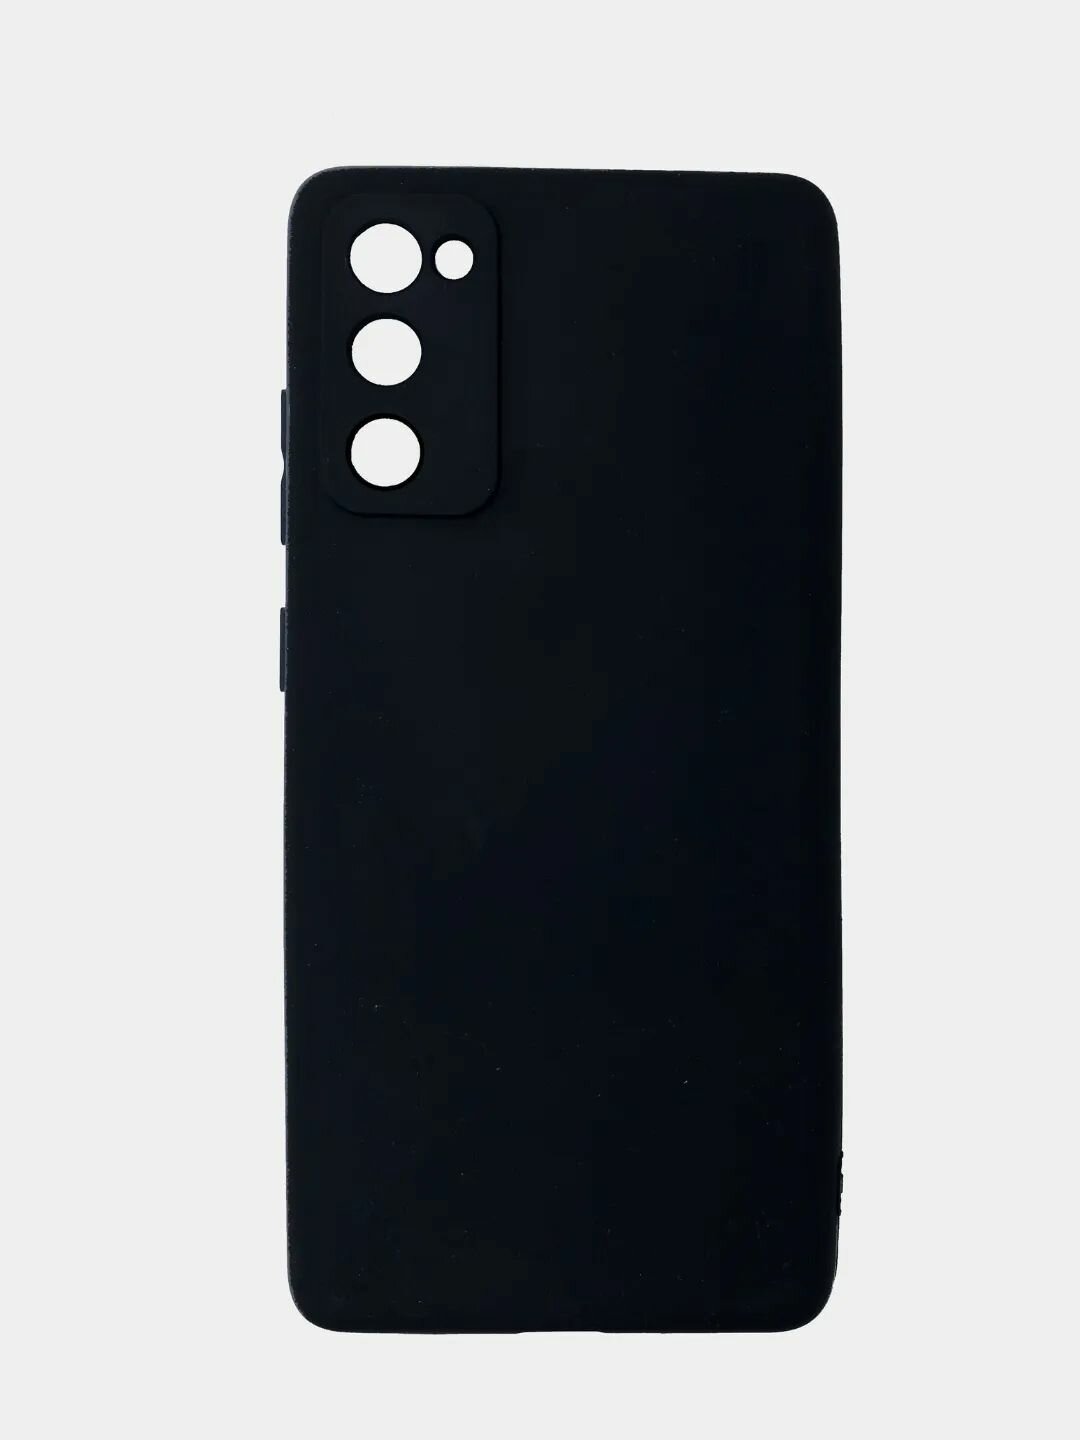 Samsung Galaxy s20 FE / s20fe Силиконовый чёрный чехол для Самсунг галакси с20фе накладка бампер гелакси галактика гелекси с 20 фе